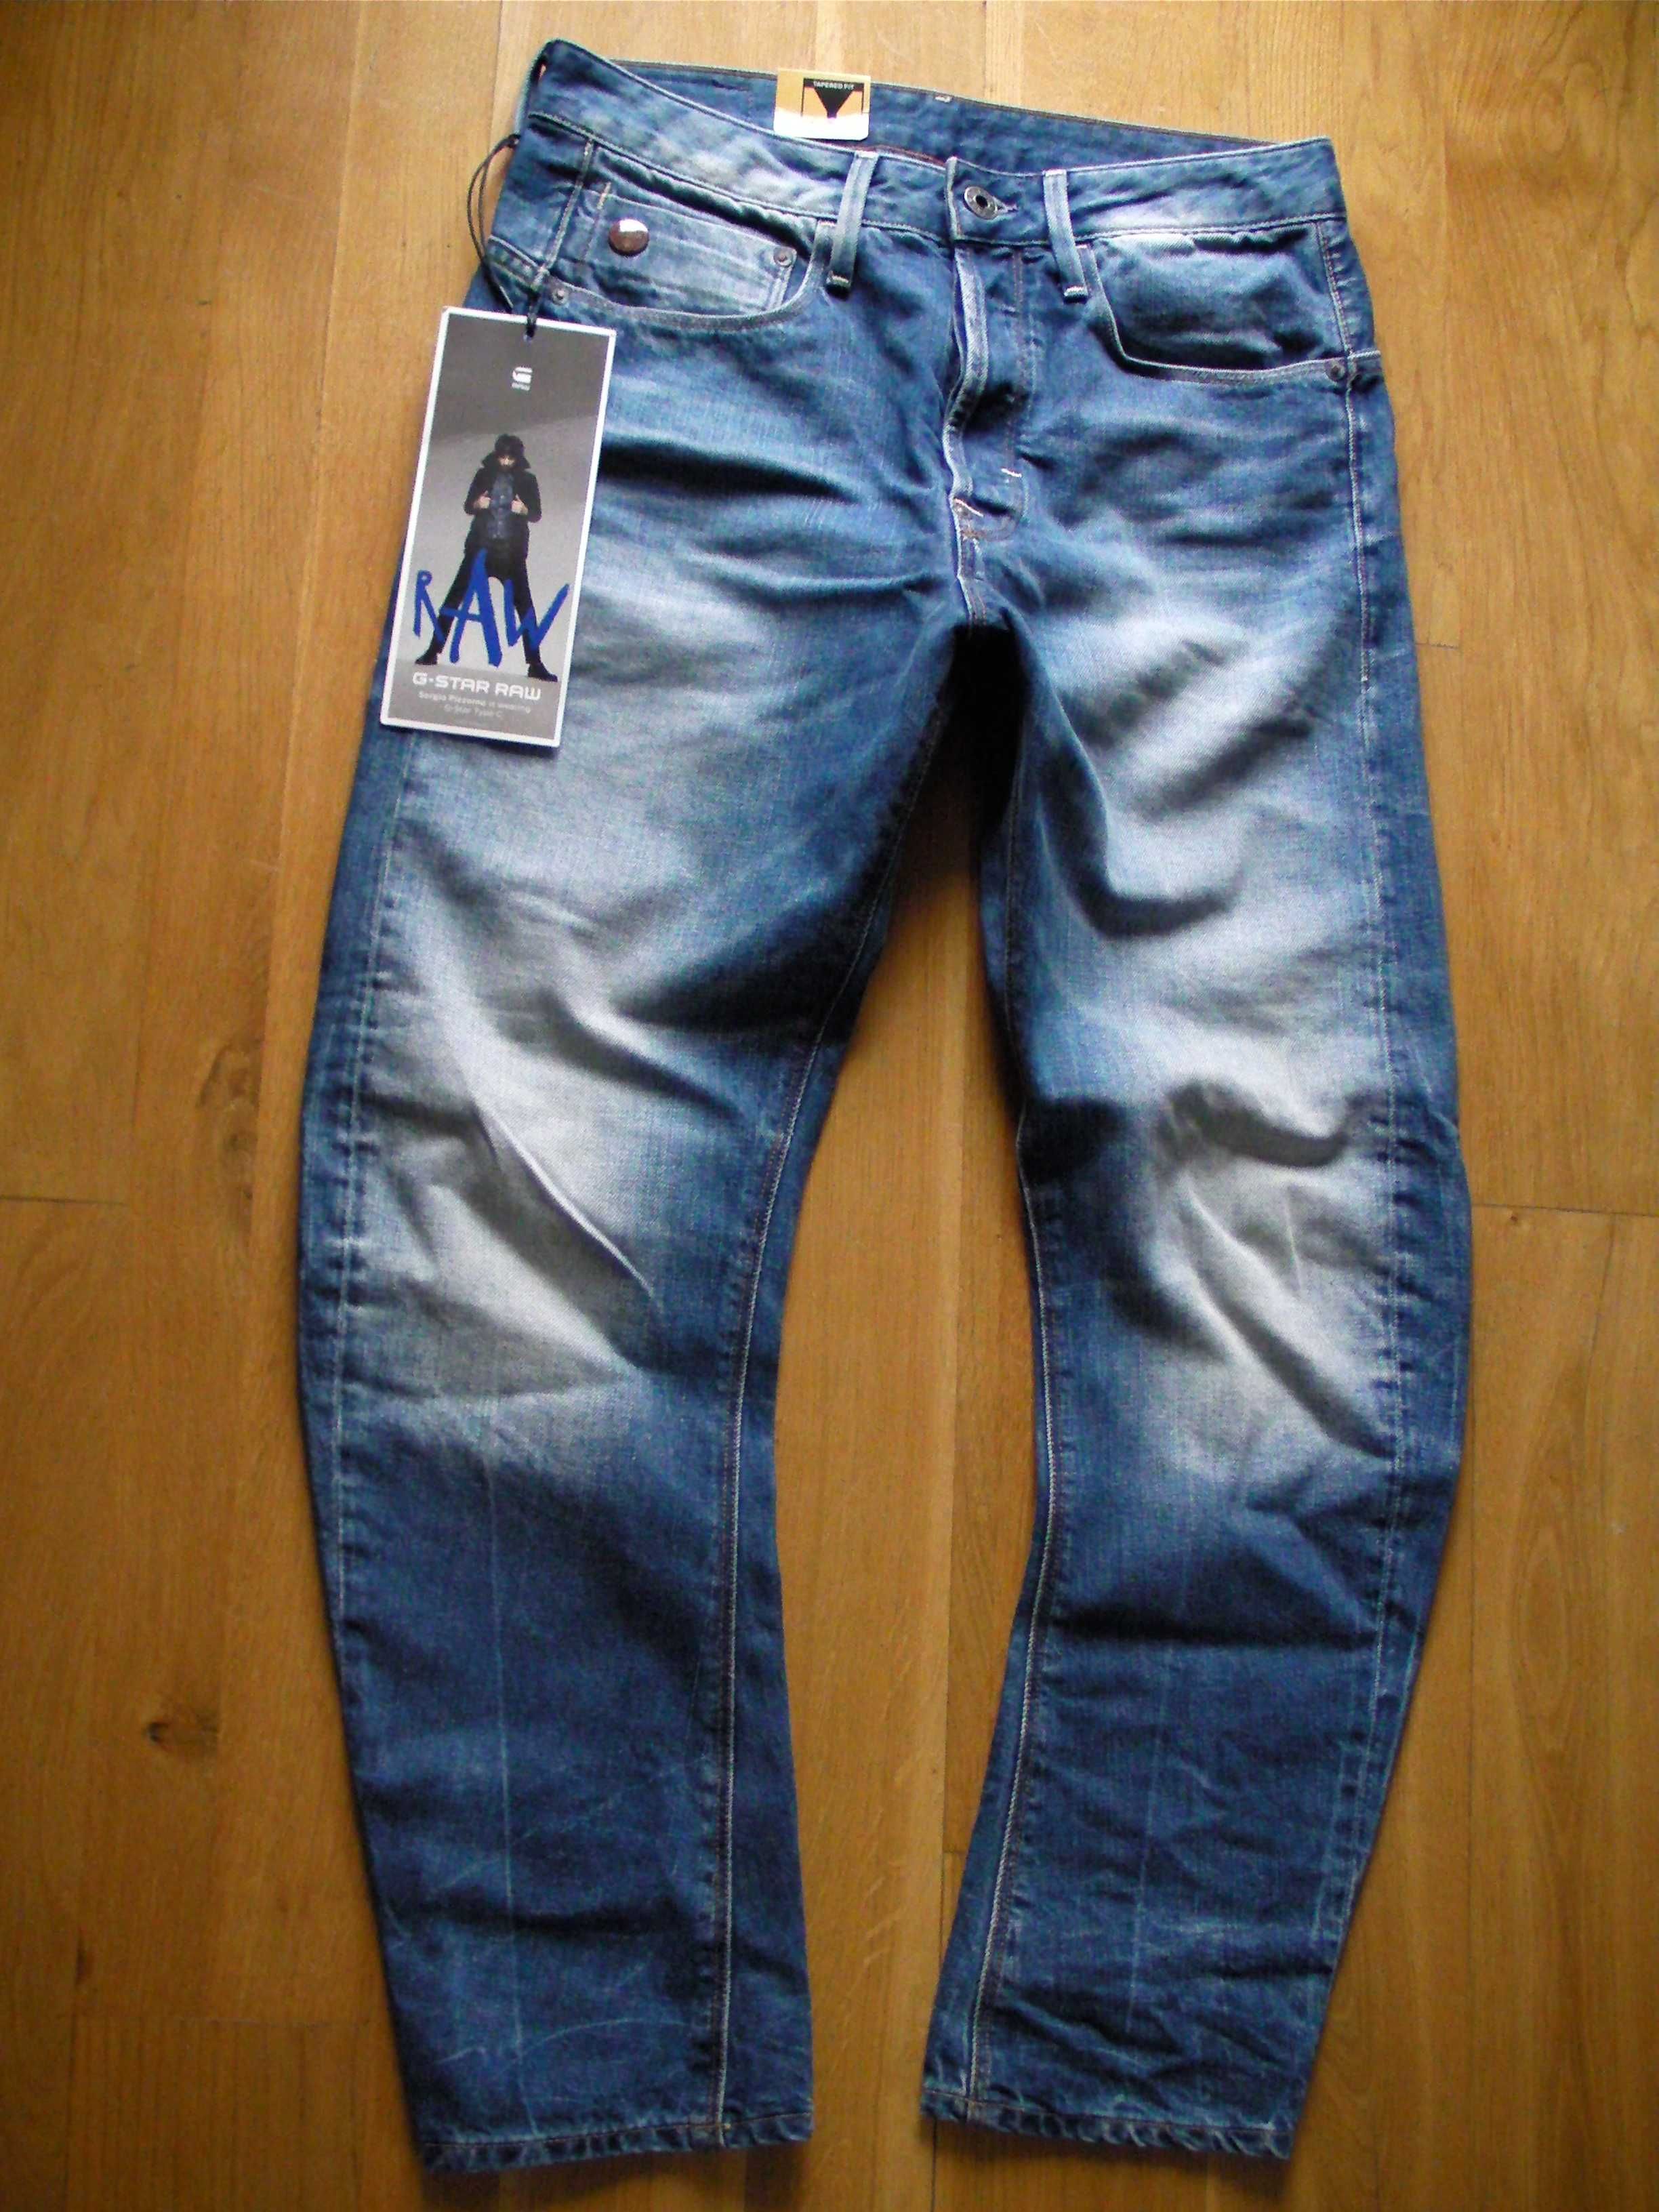 Spodnie Męskie jeans G-Star Nuke W30 L30 NOWE!